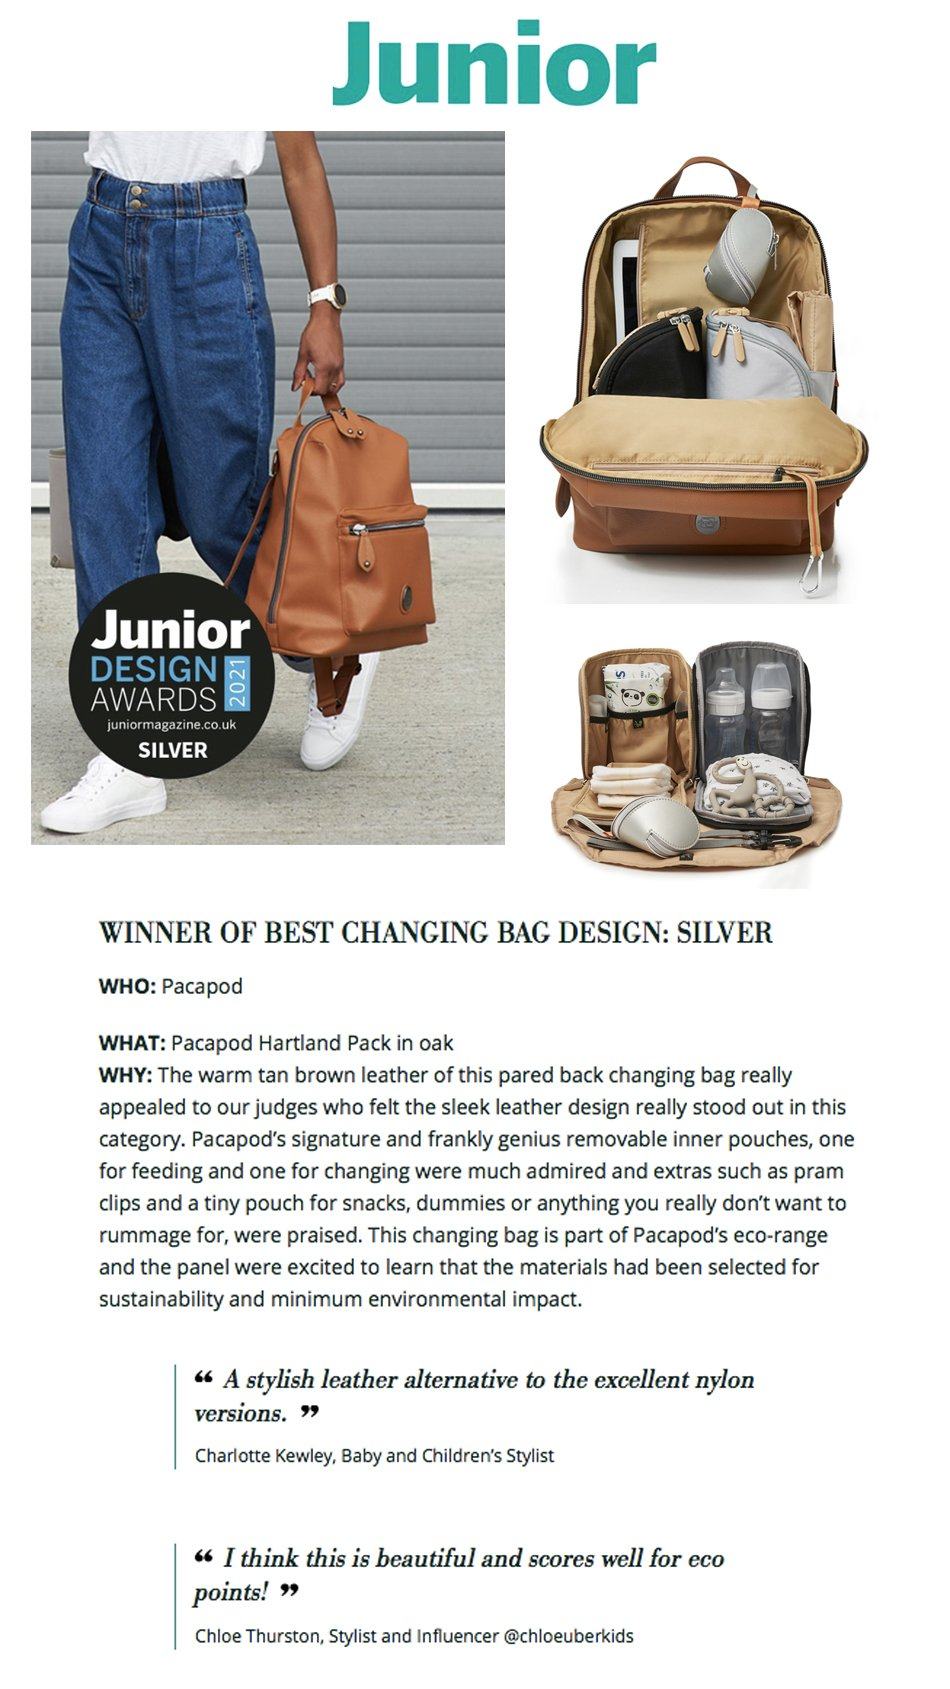 Junior Design Awards - Silver Winner